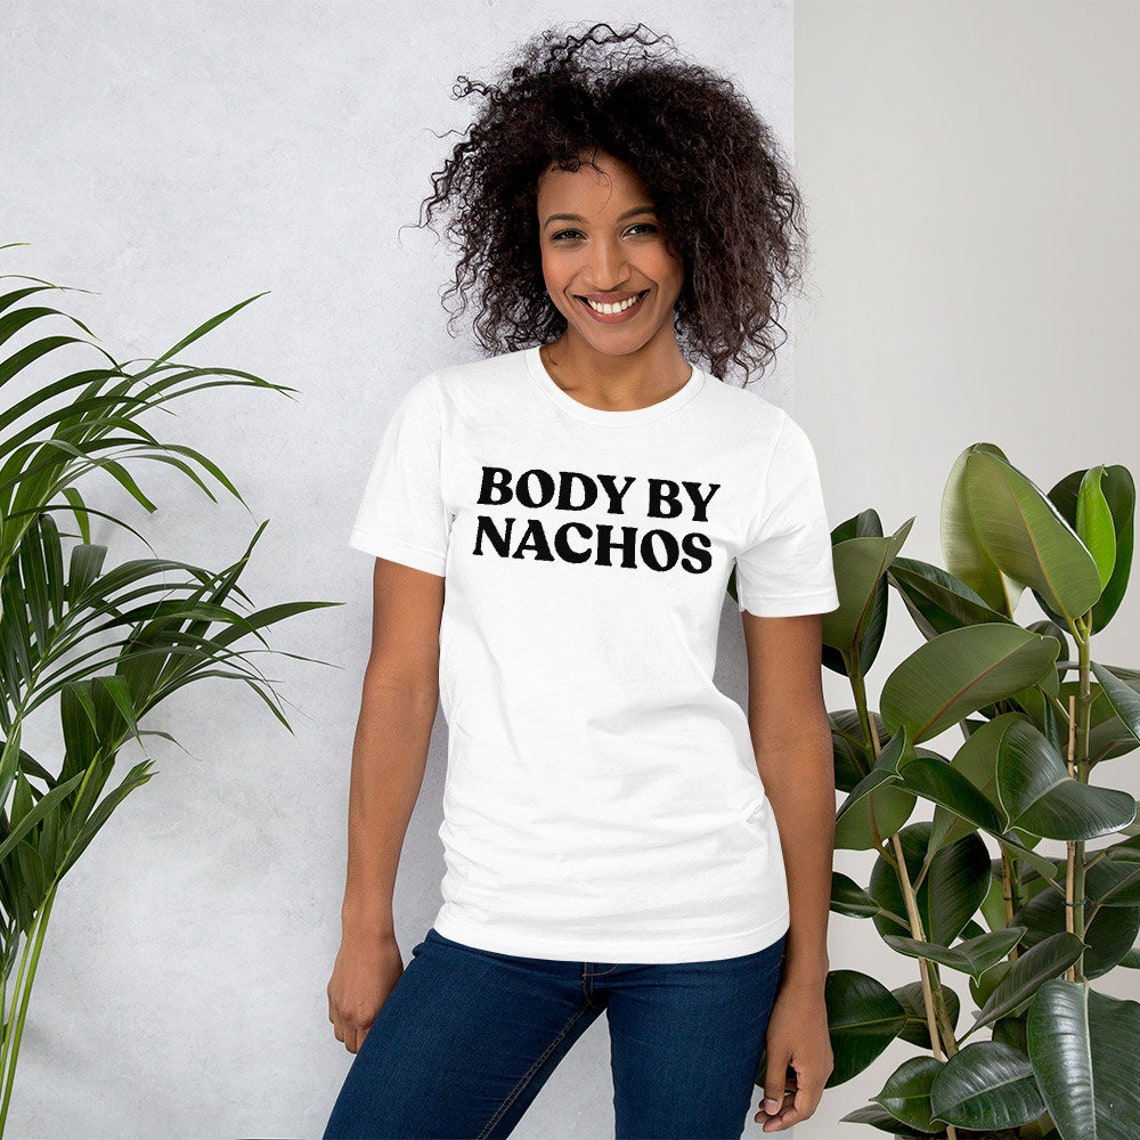 Body By Nachos Shirt Nachos Tshirt Funny Shirts Nacho Etsy